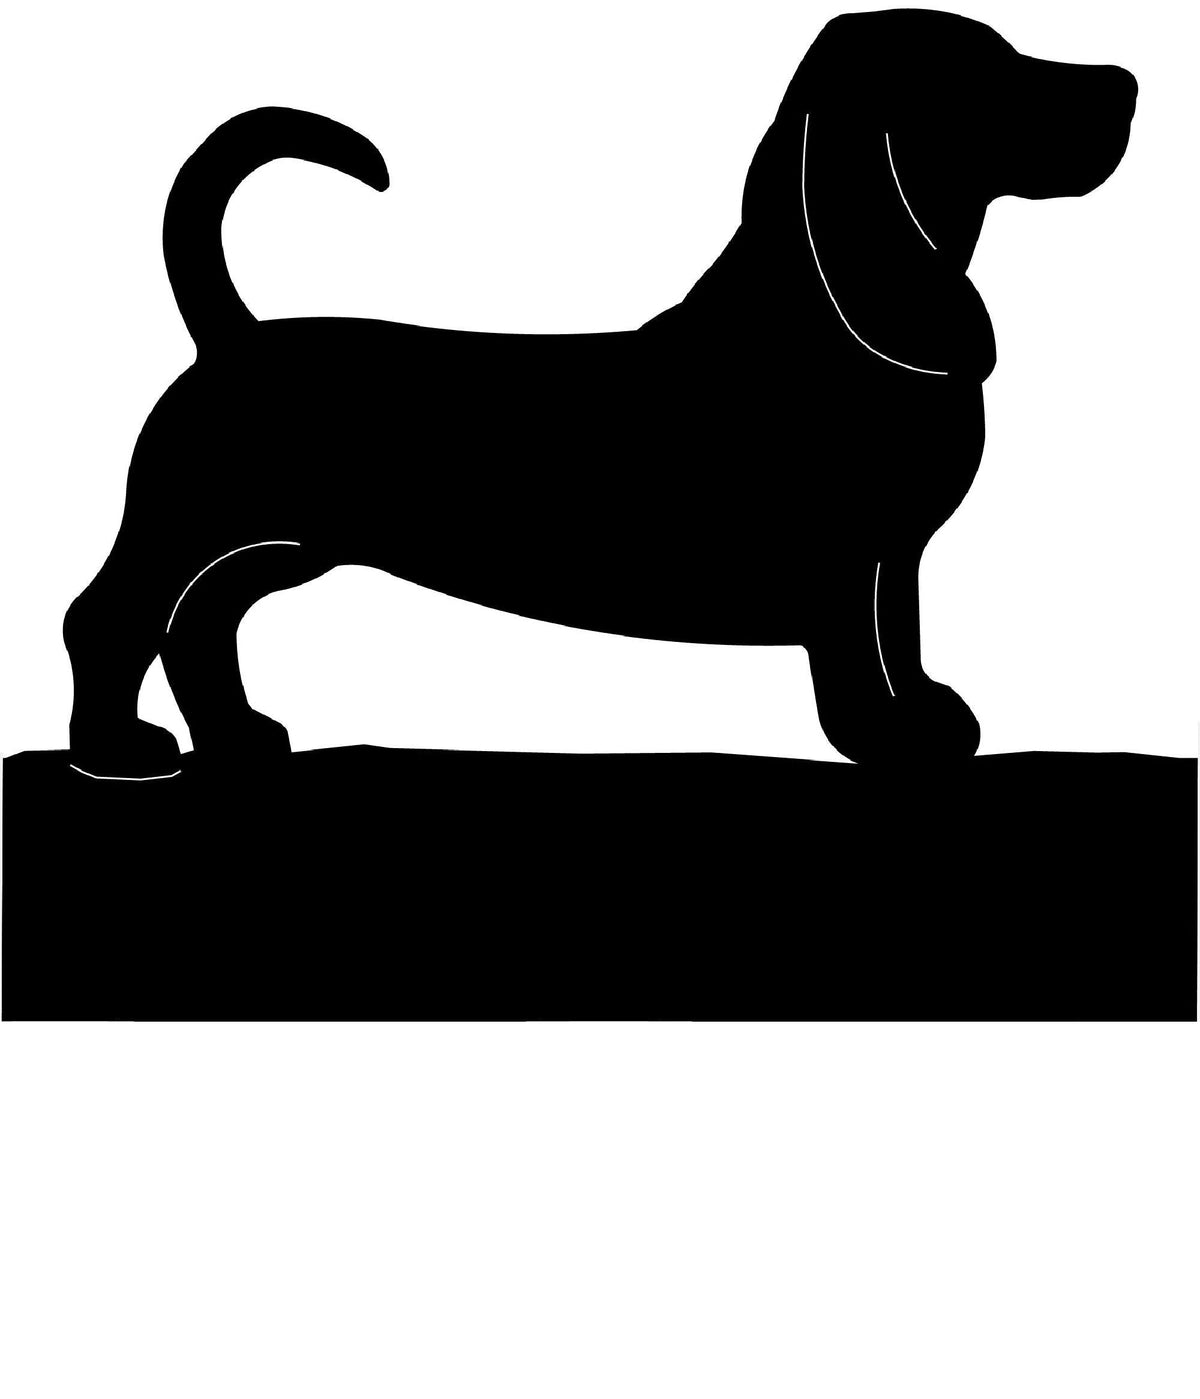 Basset Hound dog address stake